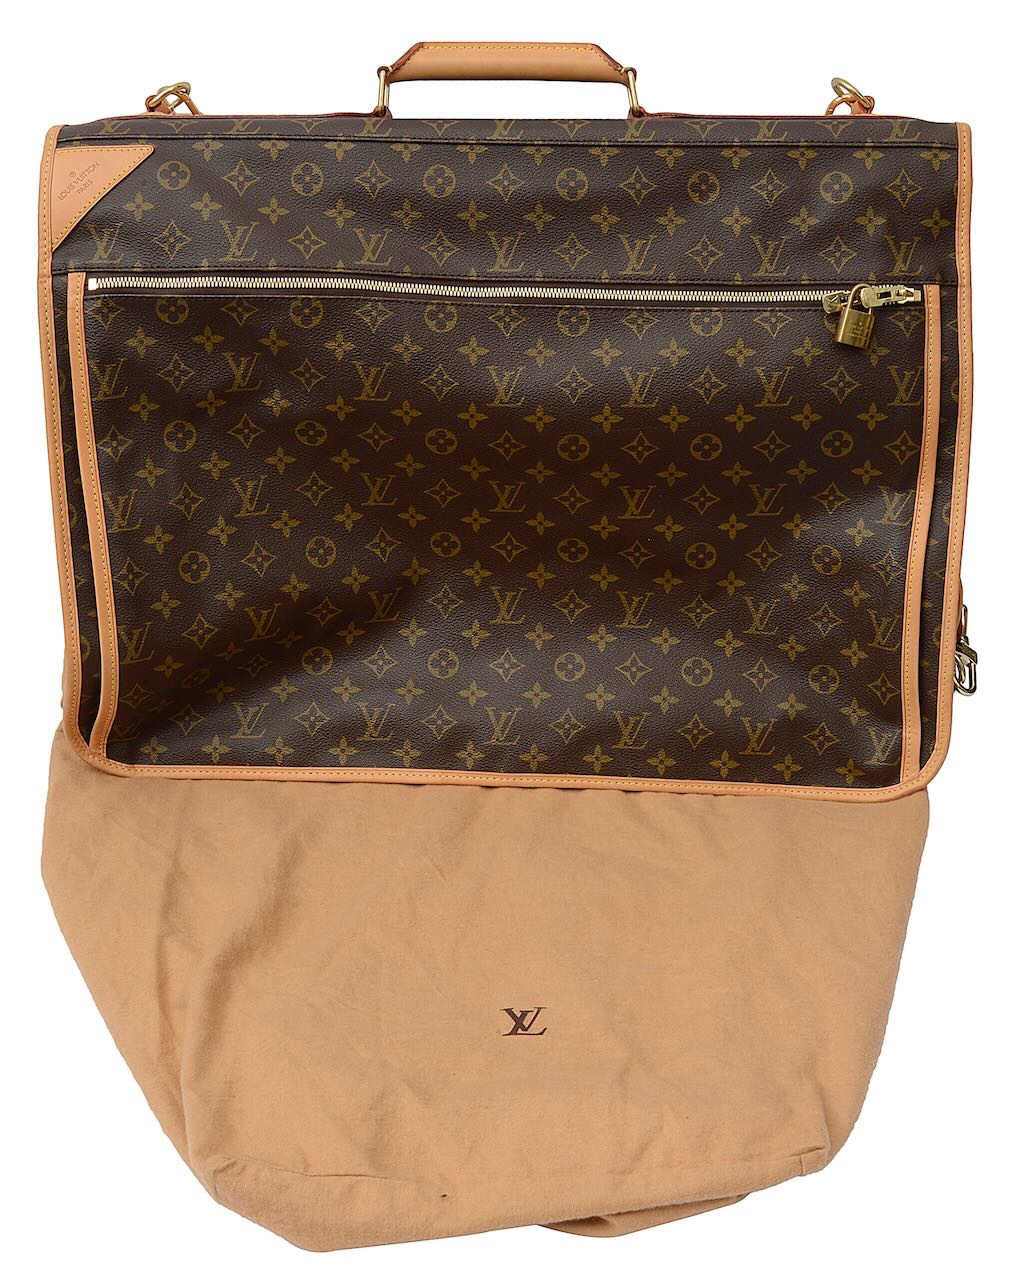 Louis Vuitton monogram garment/suit carrier - Image 2 of 5